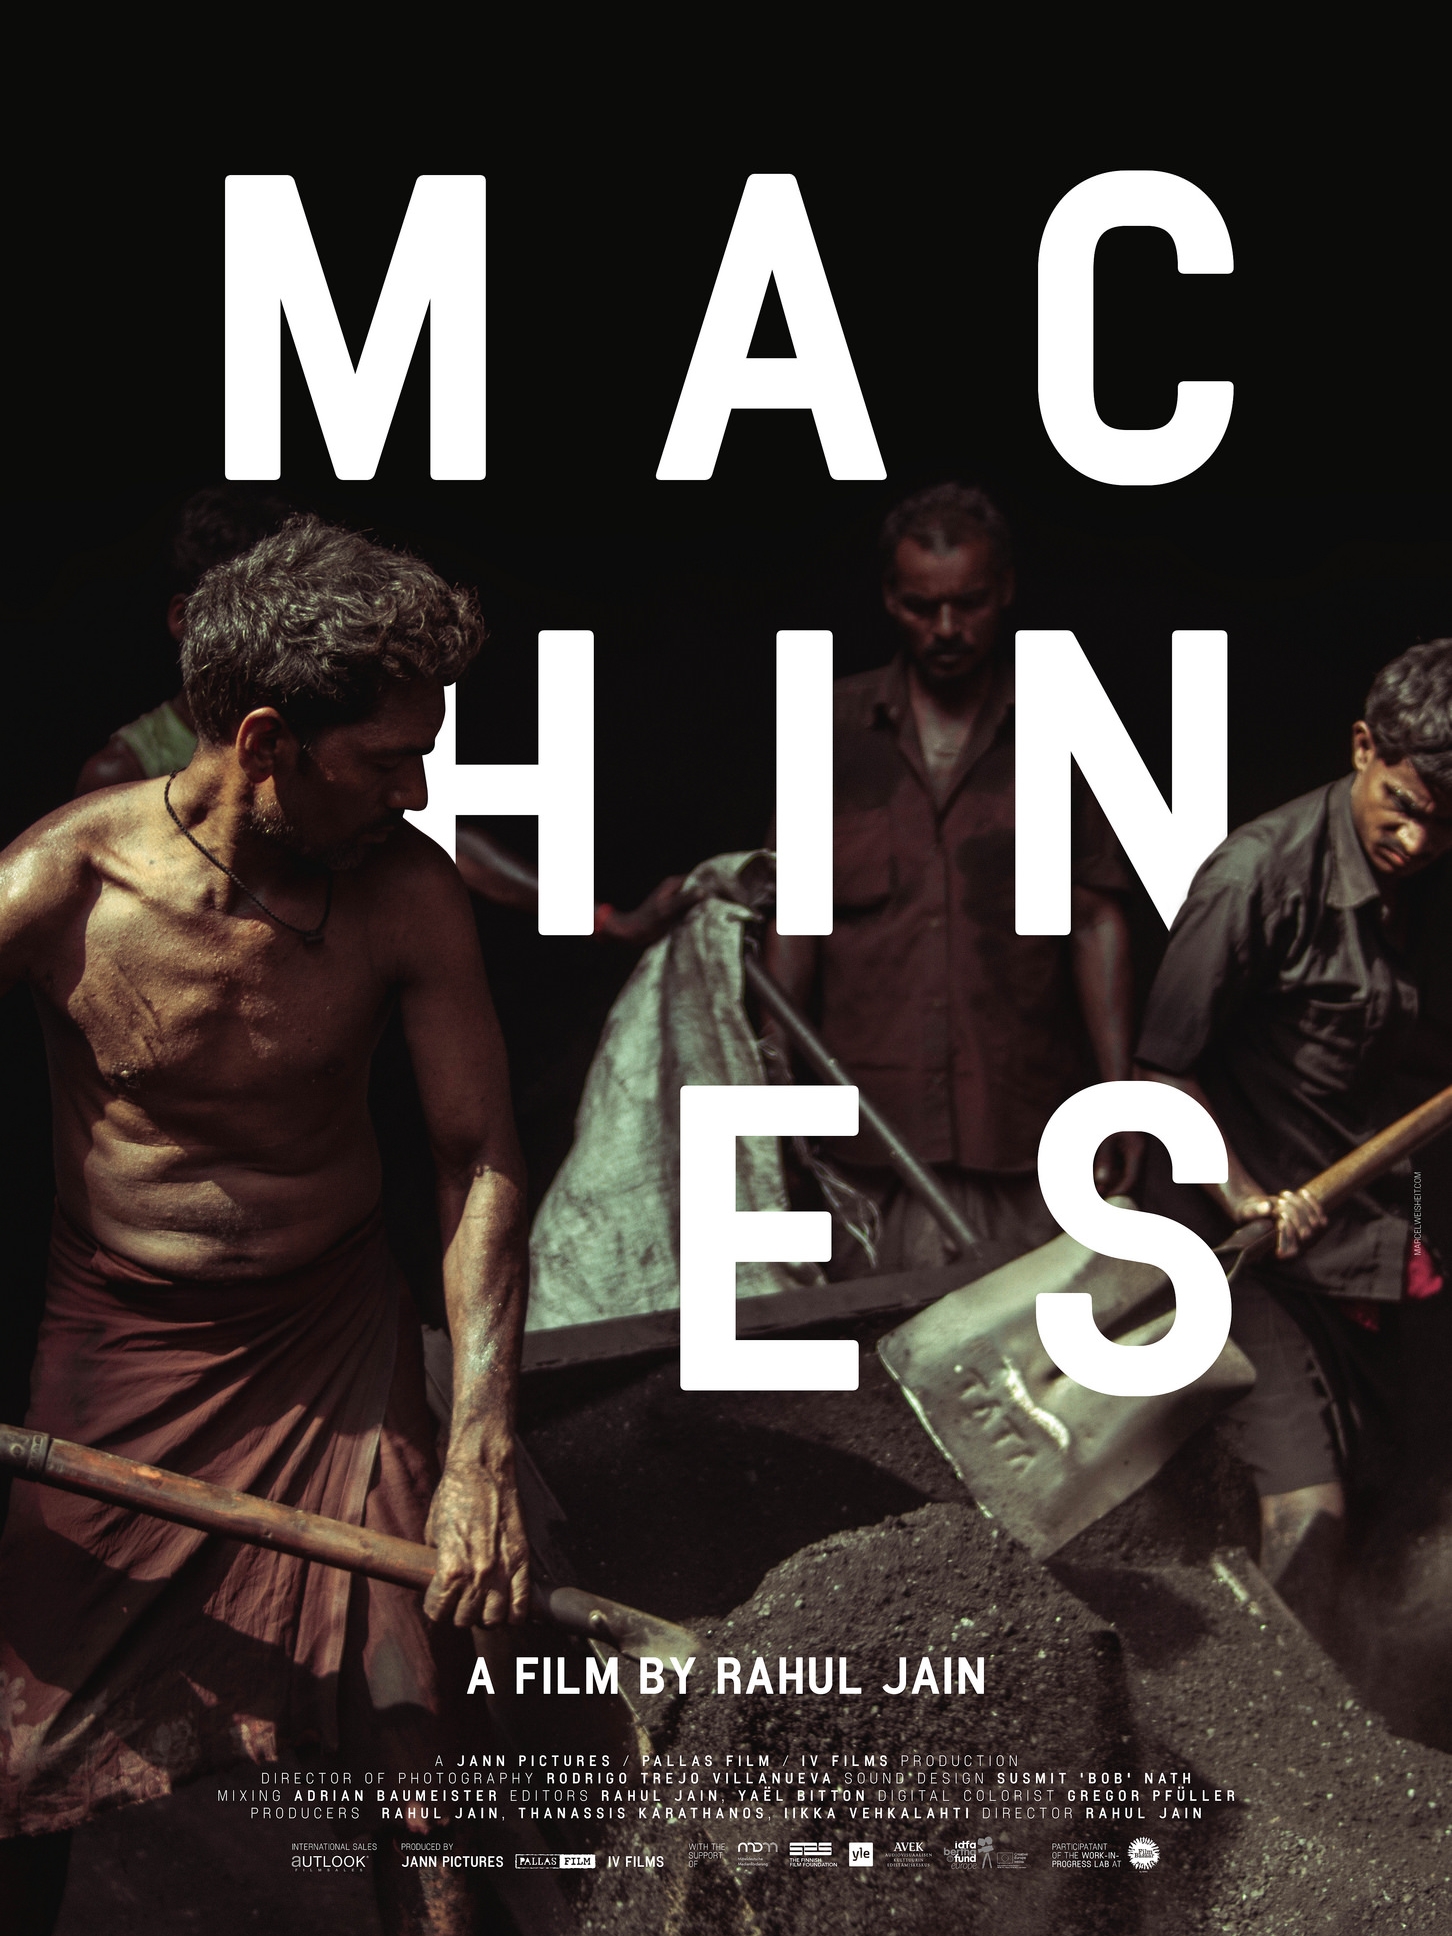 Machines Film documentaire 2016 AlloCiné